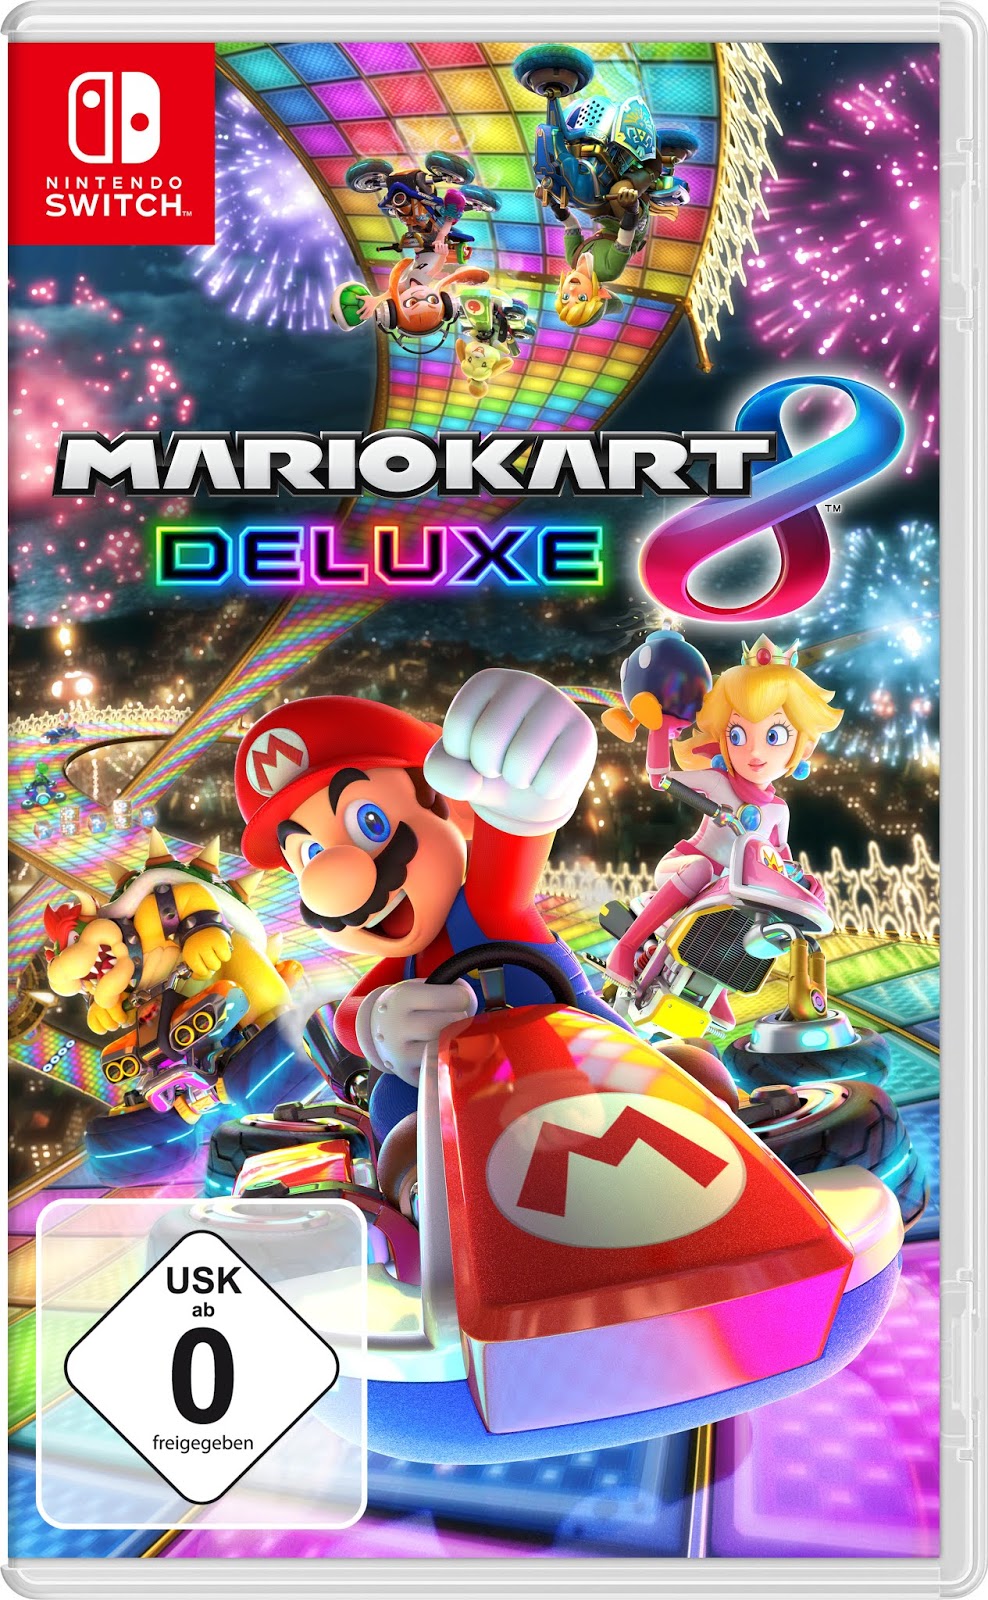 Spielen mit der Nintendo Switch und Super Mario Kart